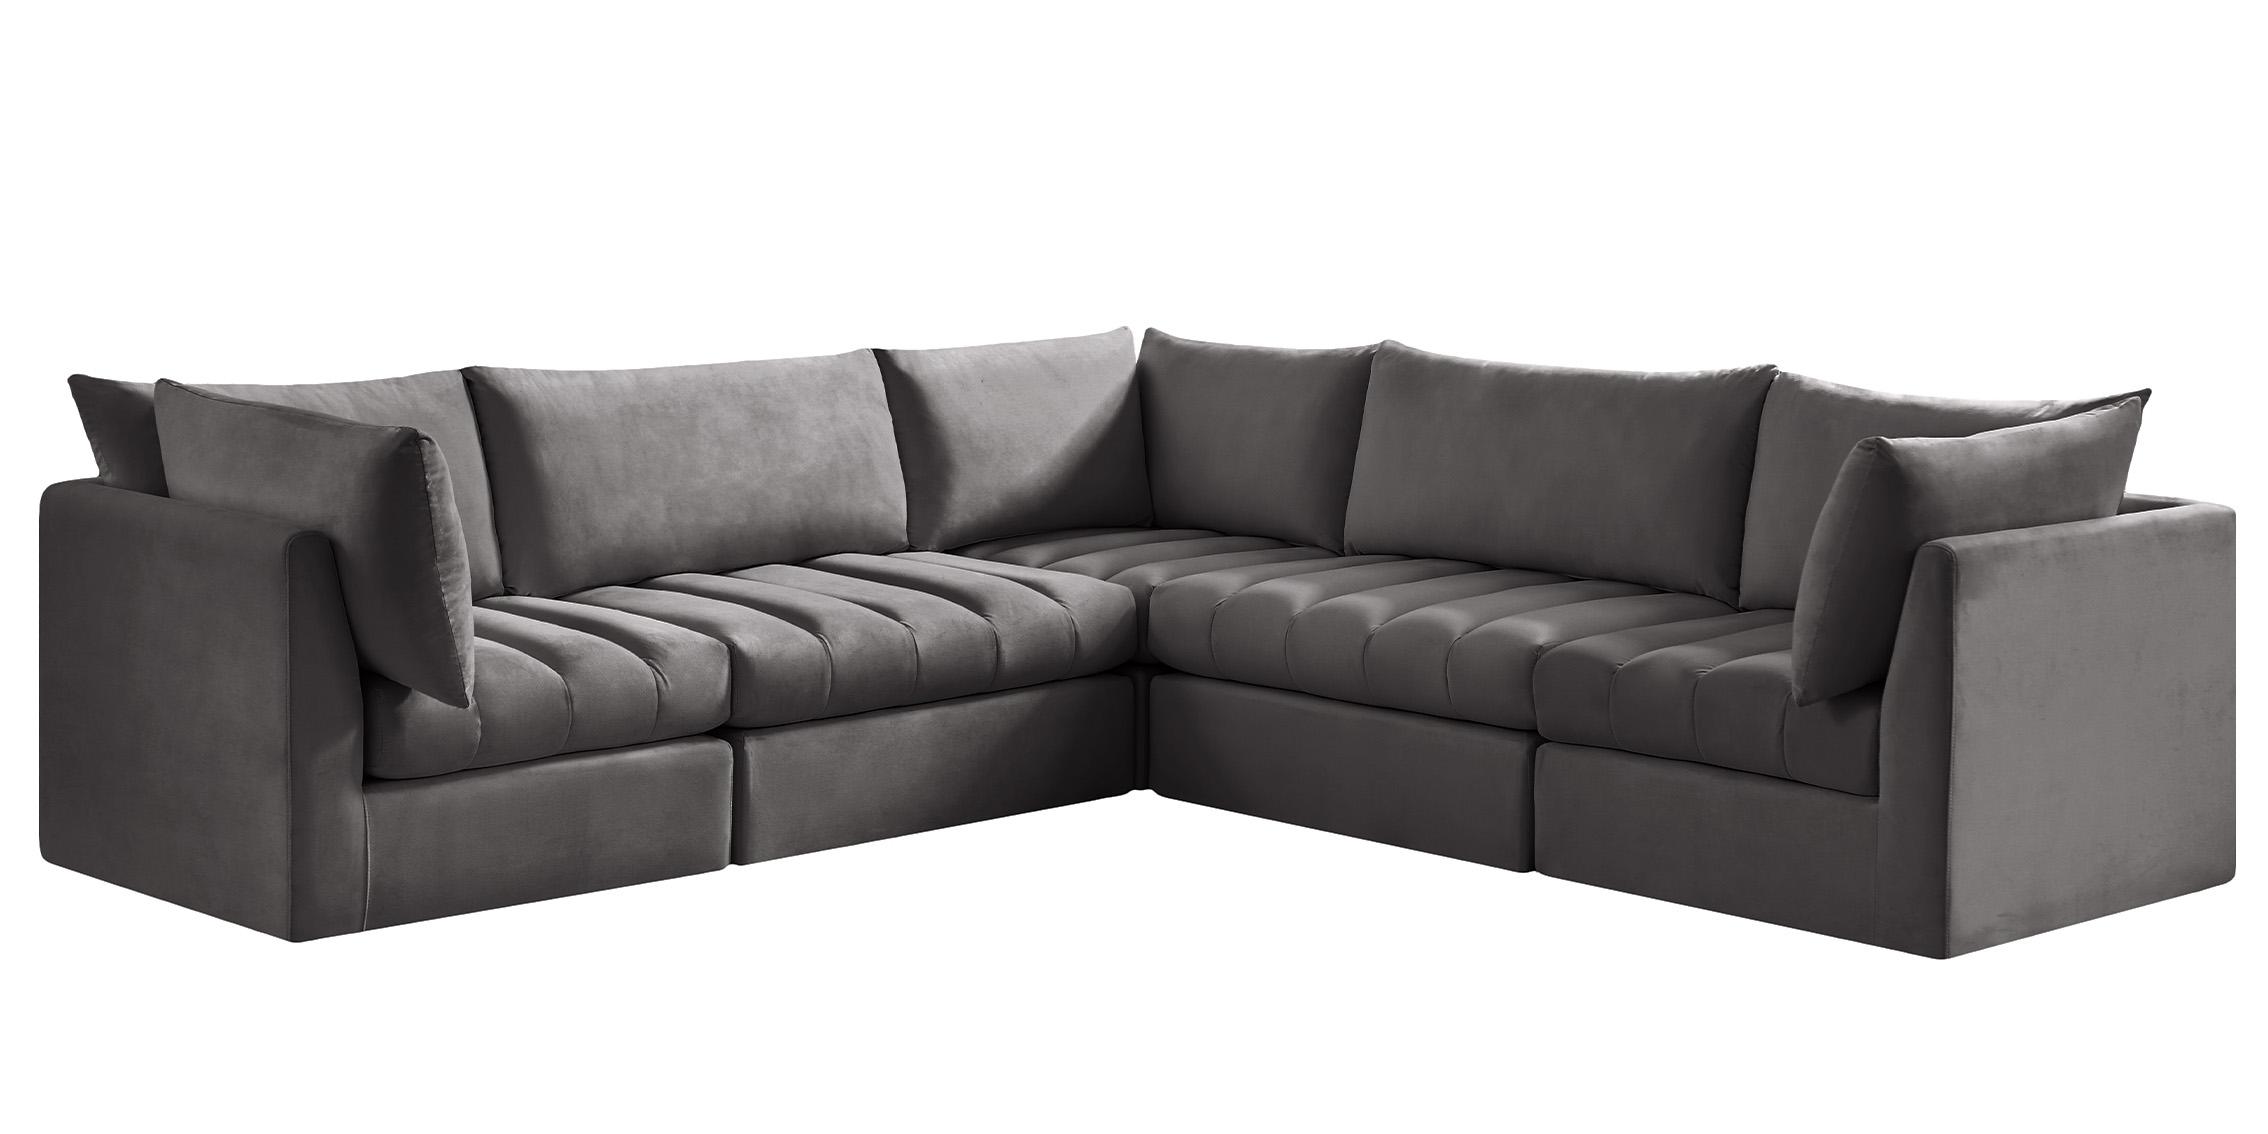 Meridian Furniture JACOB 649Grey-Sec5C Modular Sectional Sofa